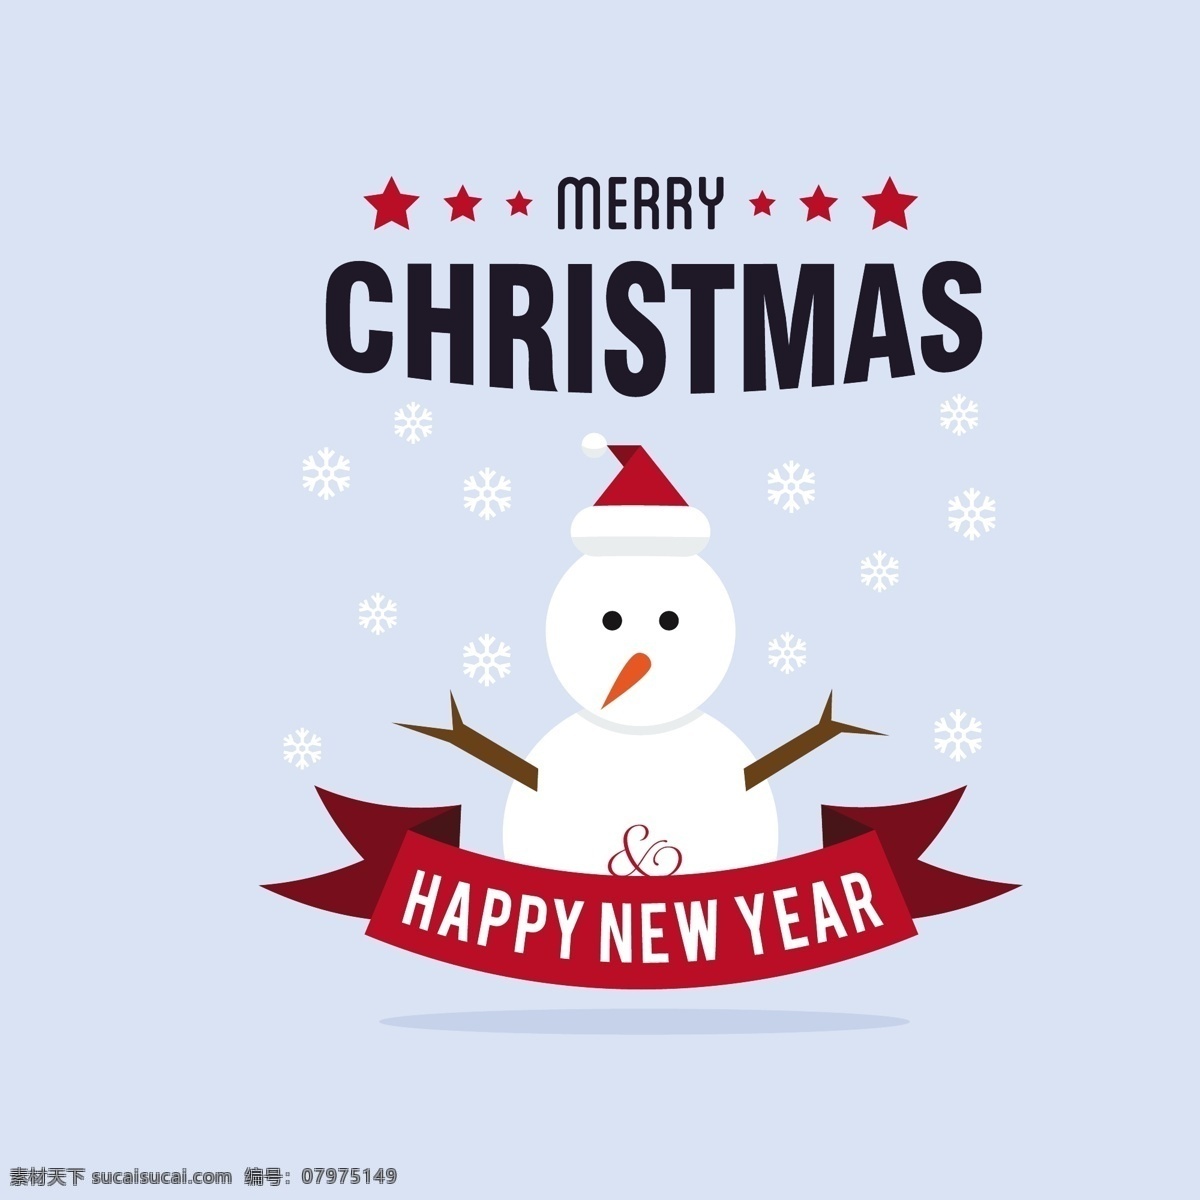 一个 雪人 美丽 圣诞卡 背景 圣诞快乐 冬天 圣诞节 雪花 装饰 卡片 文化 冷 假期 季节 节日 十二月